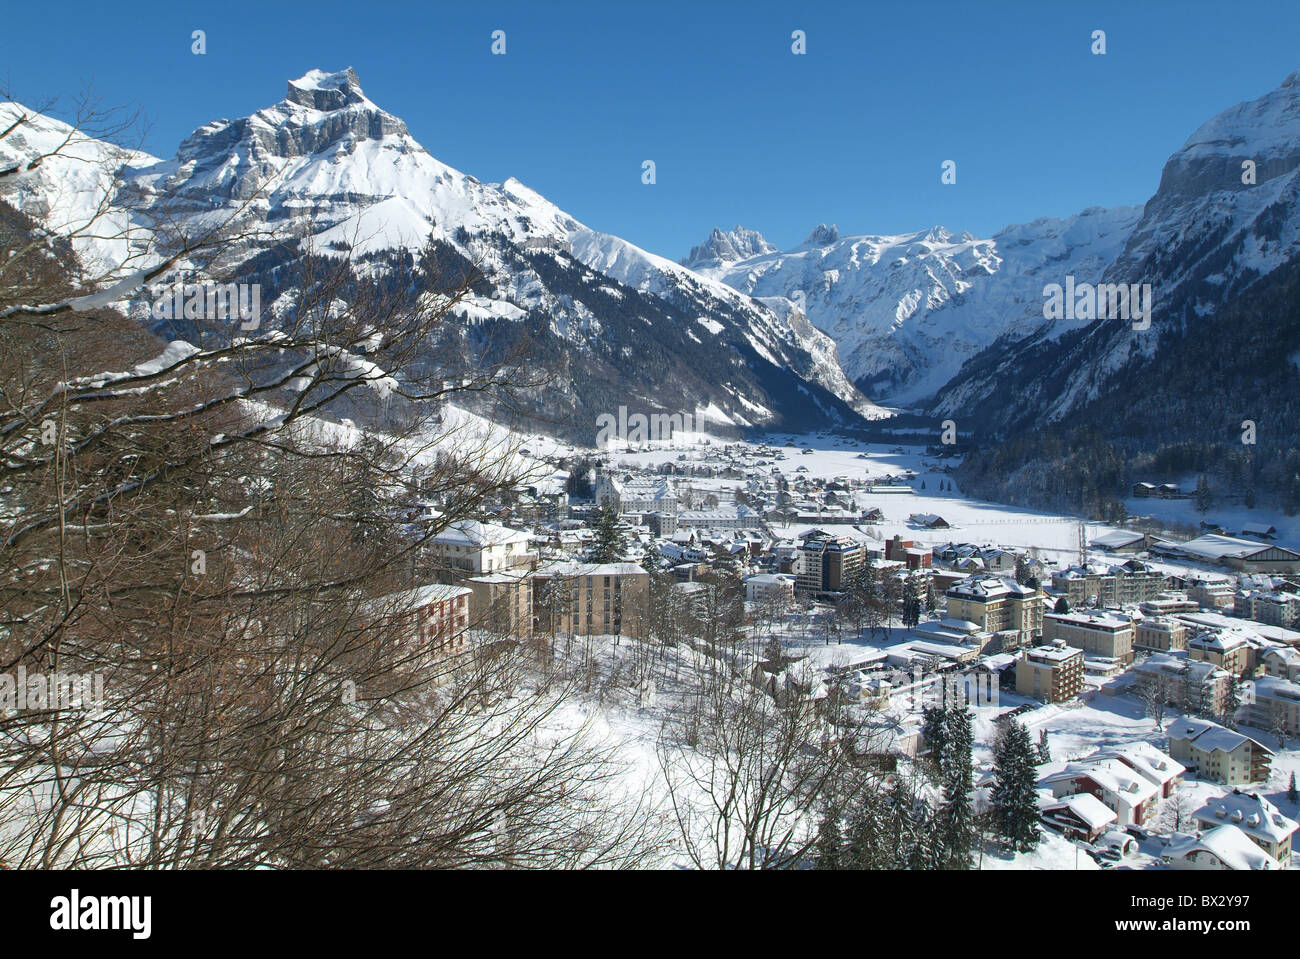 Engelberg panoramica villaggio valle d'inverno le montagne delle Alpi neve canton Obvaldo paesaggio paesaggio svizzera Foto Stock